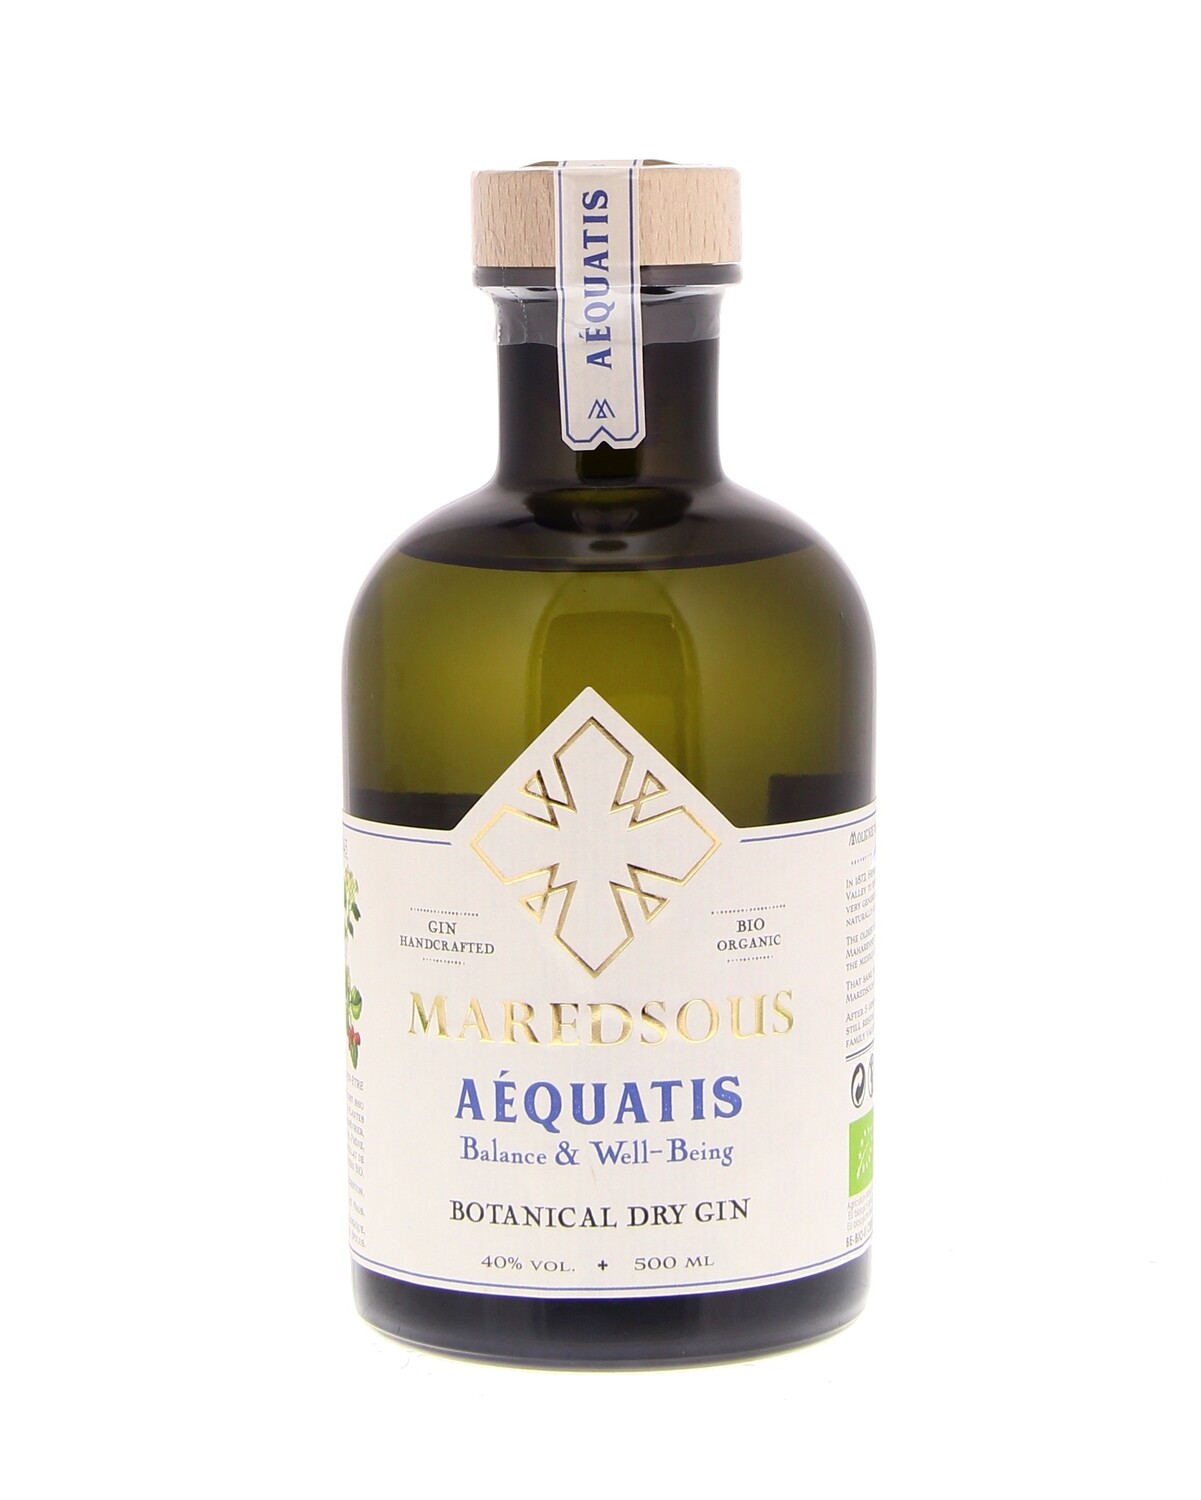 Maredsous Aequatis dry gin